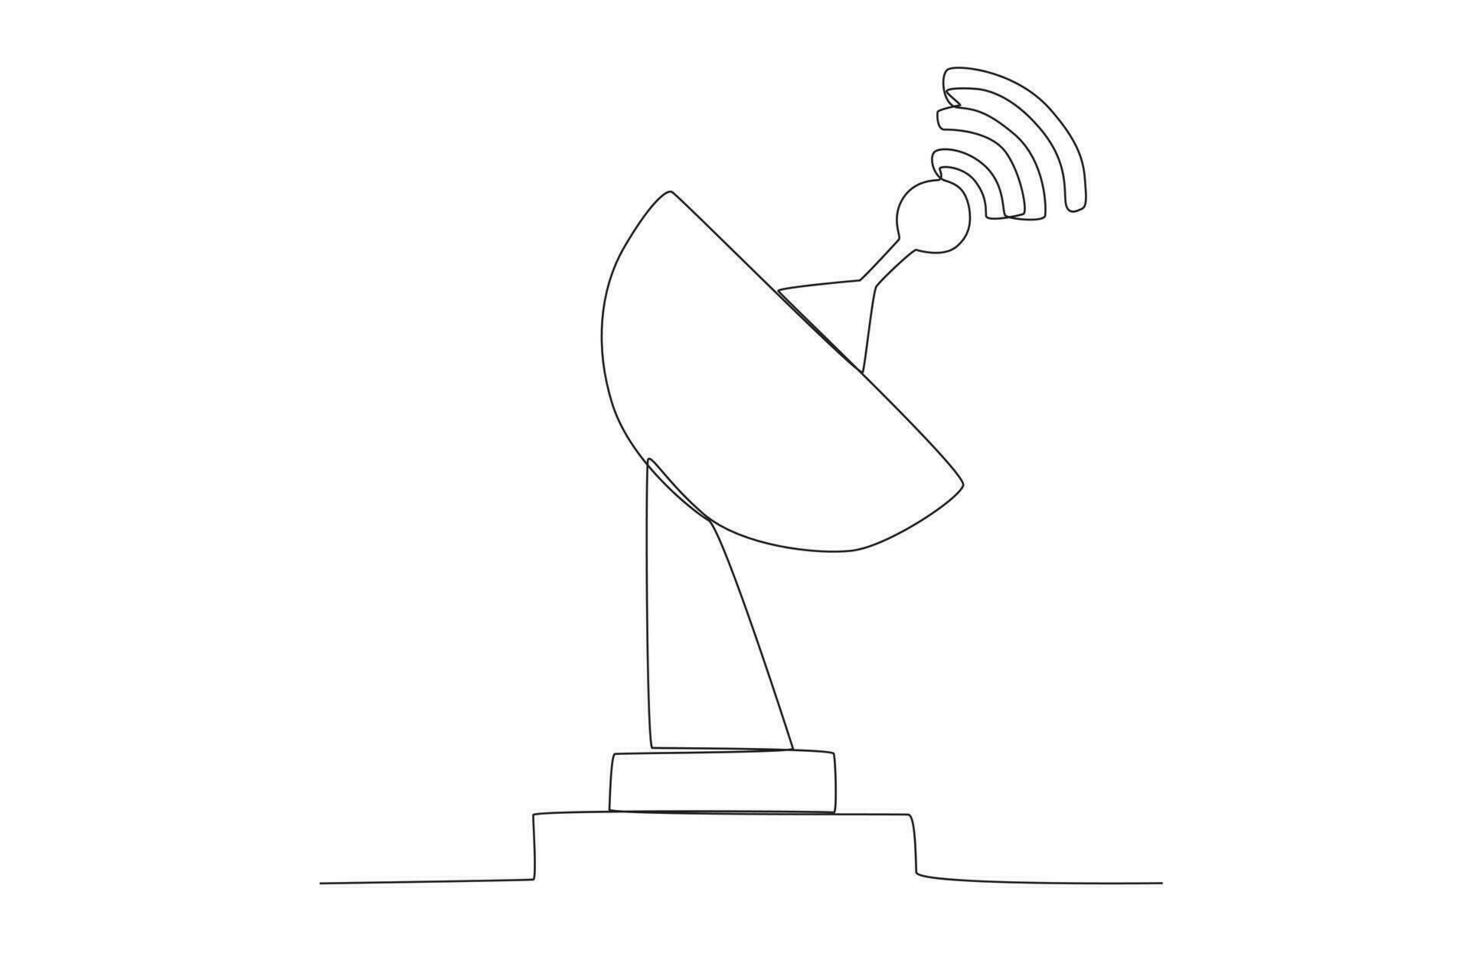 uno singolo linea disegno di trasmettitore Torre comunicazione dispositivo concetto. continuo linea disegnare vettore design illustrazione nasa